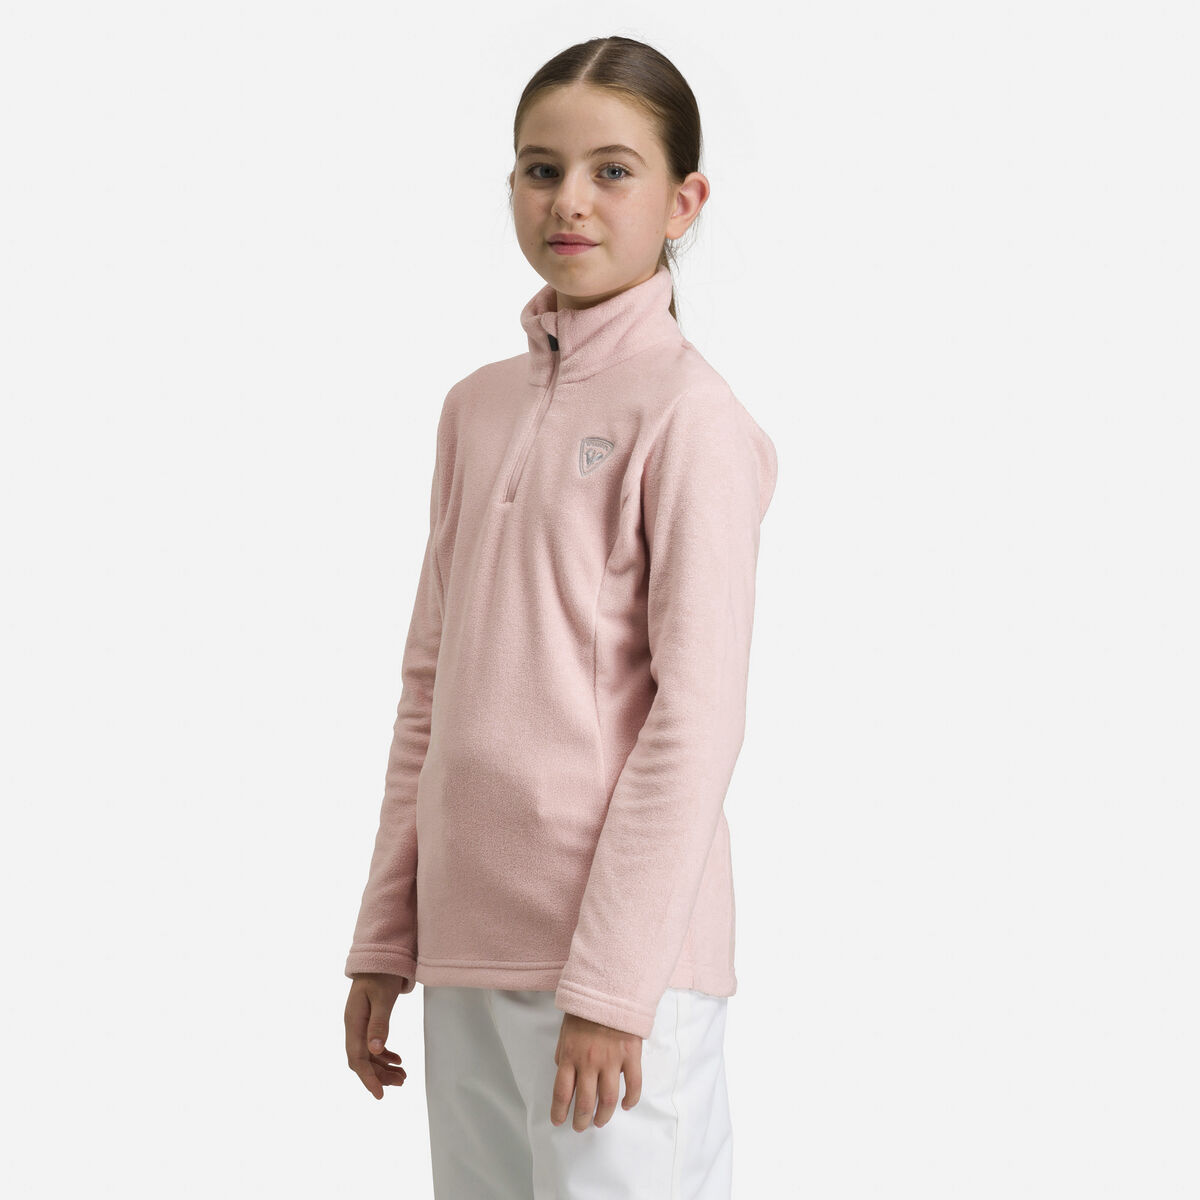 Rossignol Girls' Half-Zip Fleece pinkpurple